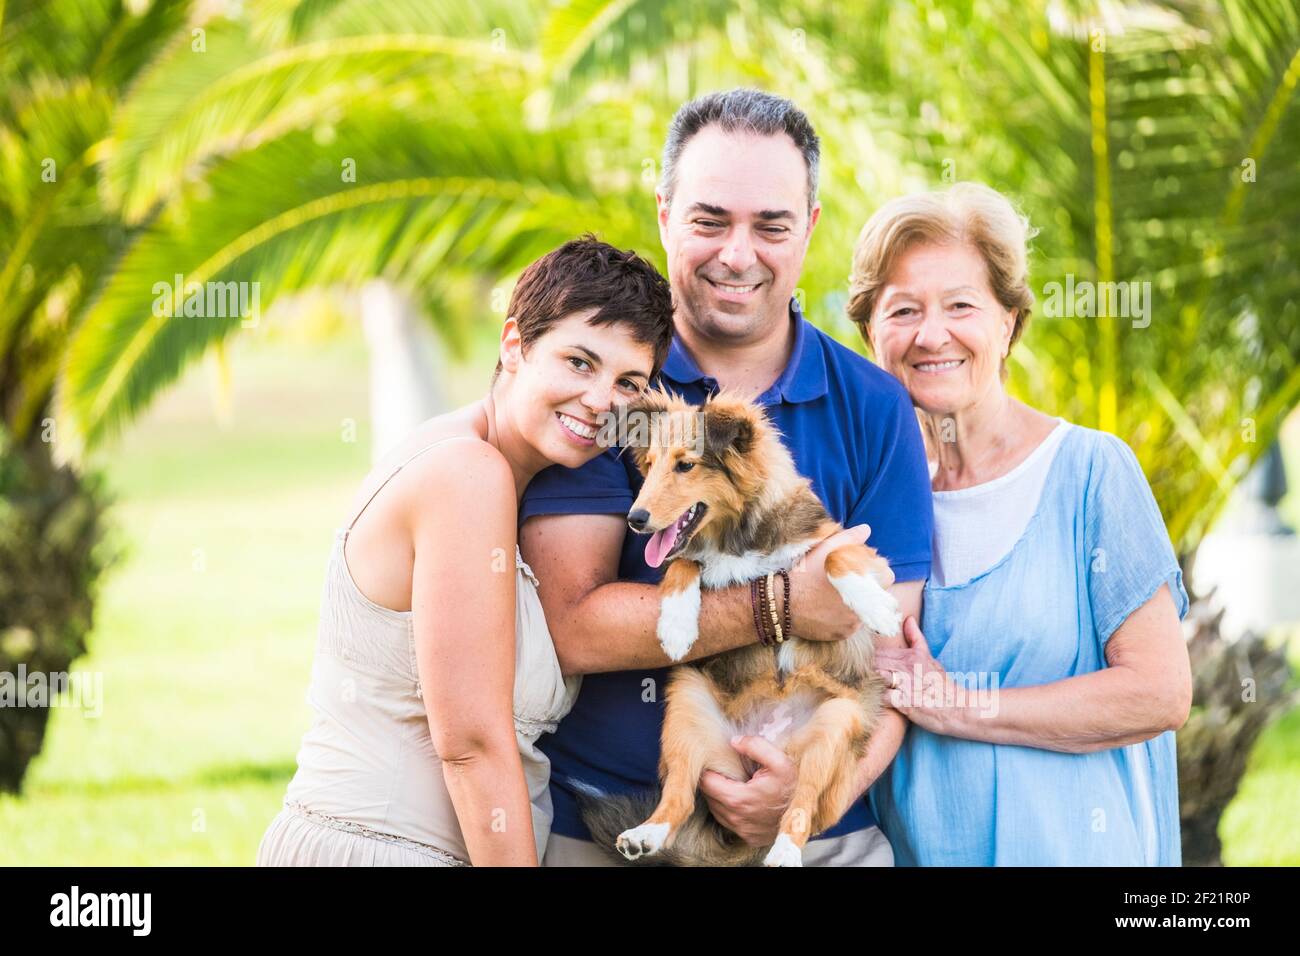 Hund und Familie Menschen Porträt in Outdoor-Freizeitaktivitäten Zusammen im Park - fröhliche kaukasische Menschen Erwachsene und Gemeinsam reifen viel Spaß Stockfoto